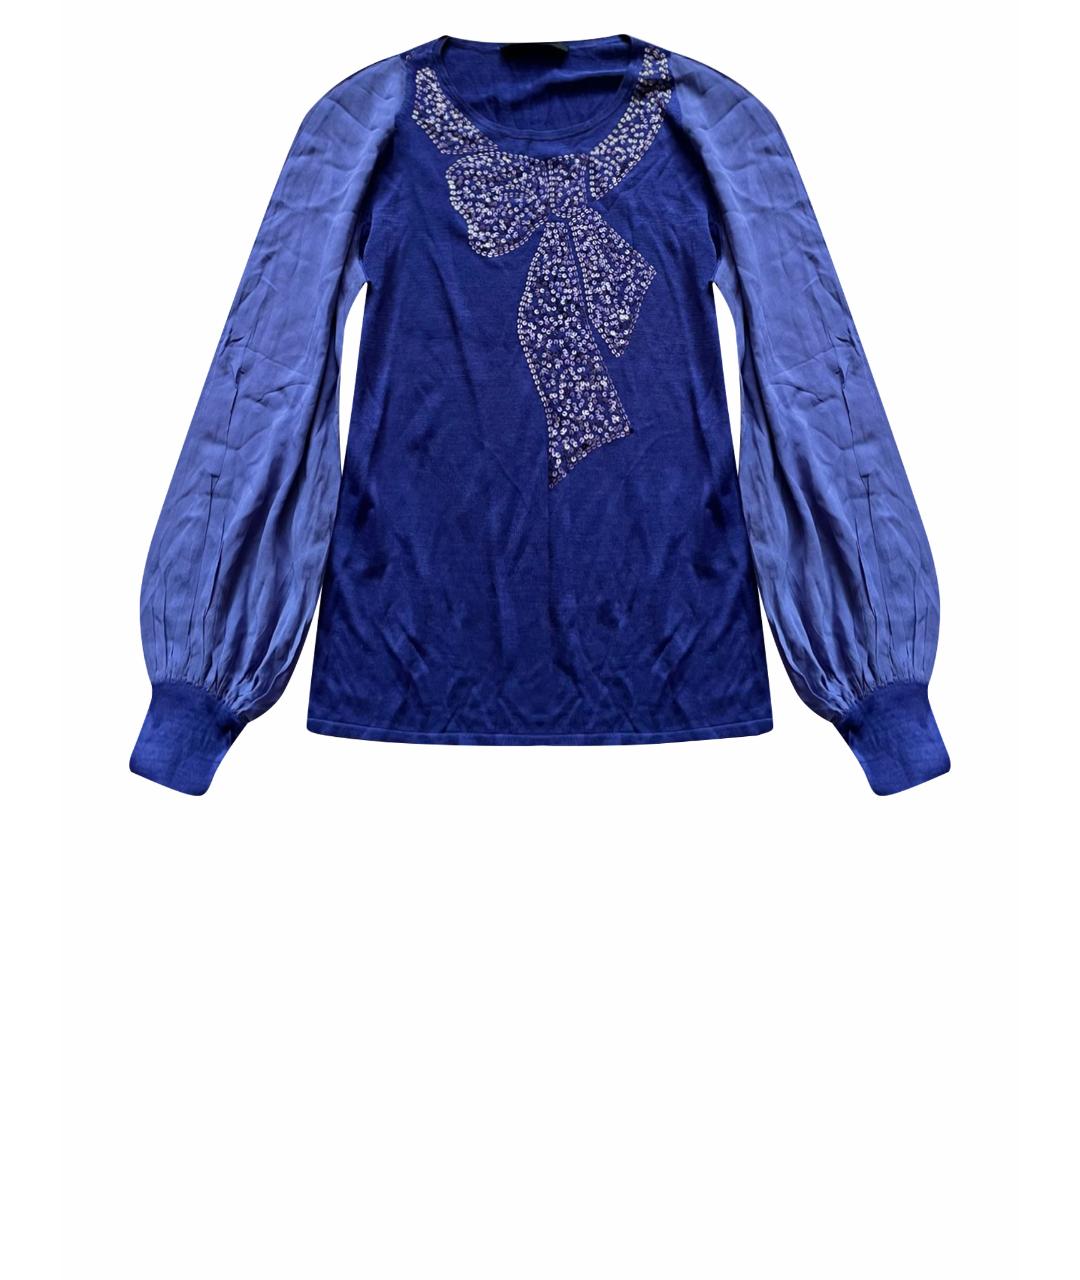 RE VERA Фиолетовый шелковый джемпер / свитер, фото 1